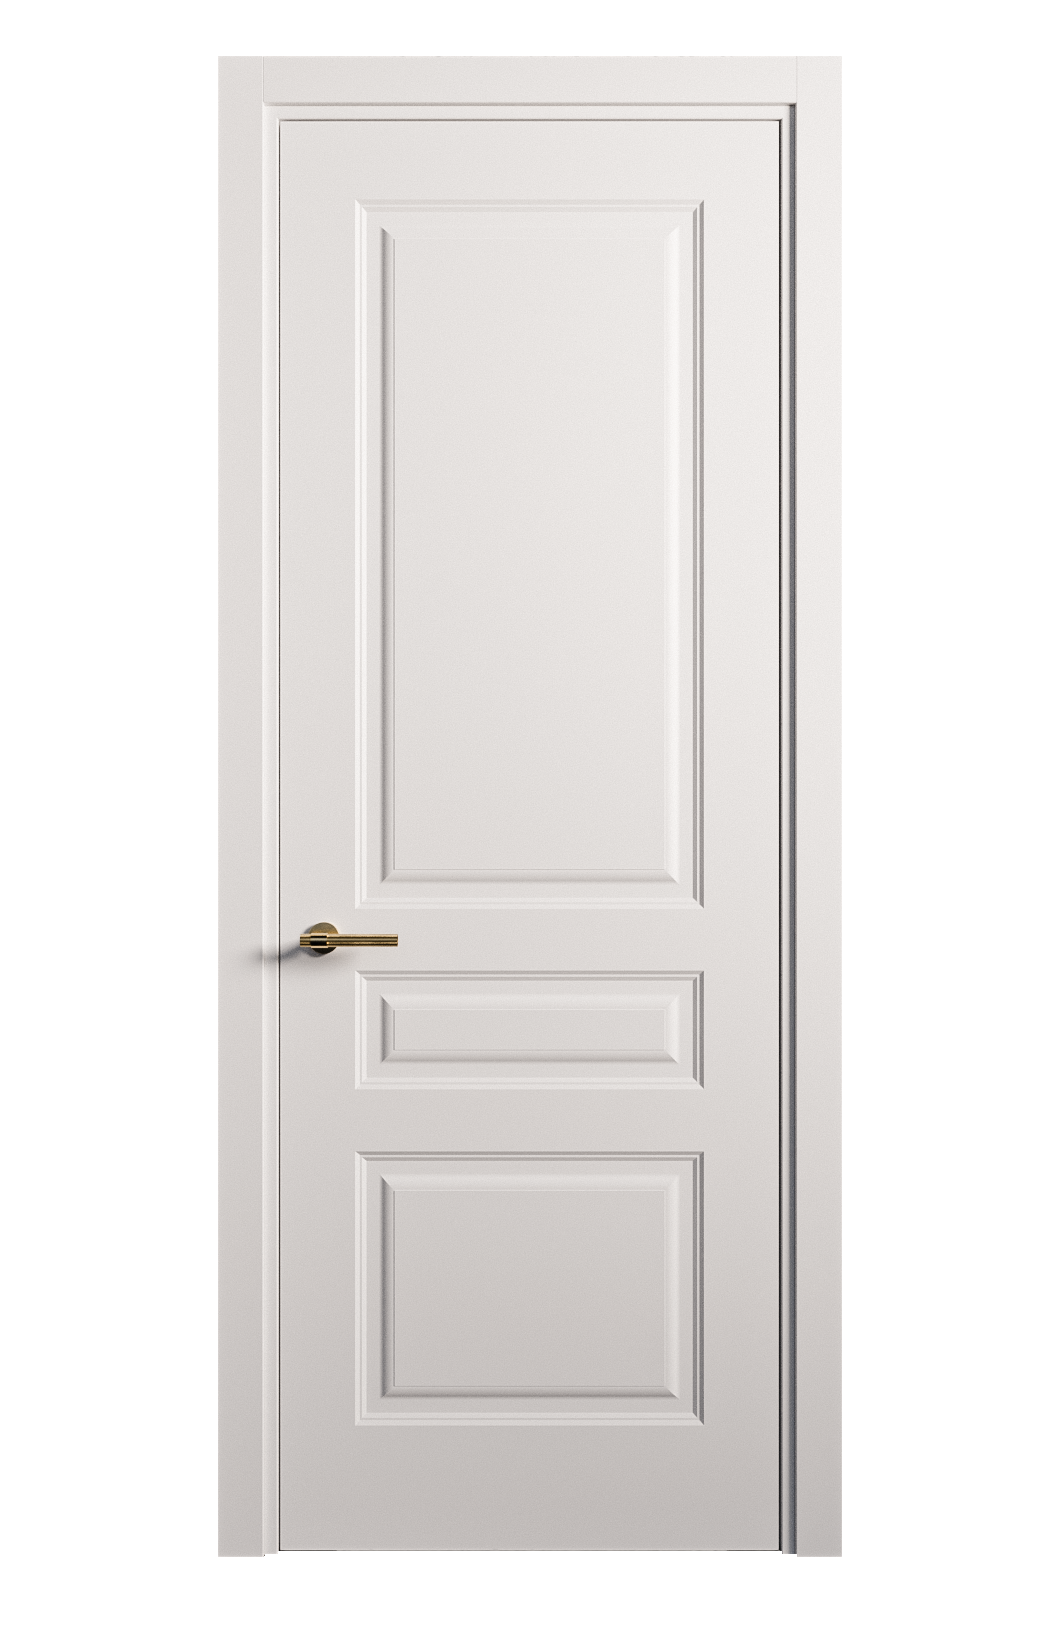 Межкомнатная дверь Вита-2 глухая эмаль ral 9003 26401